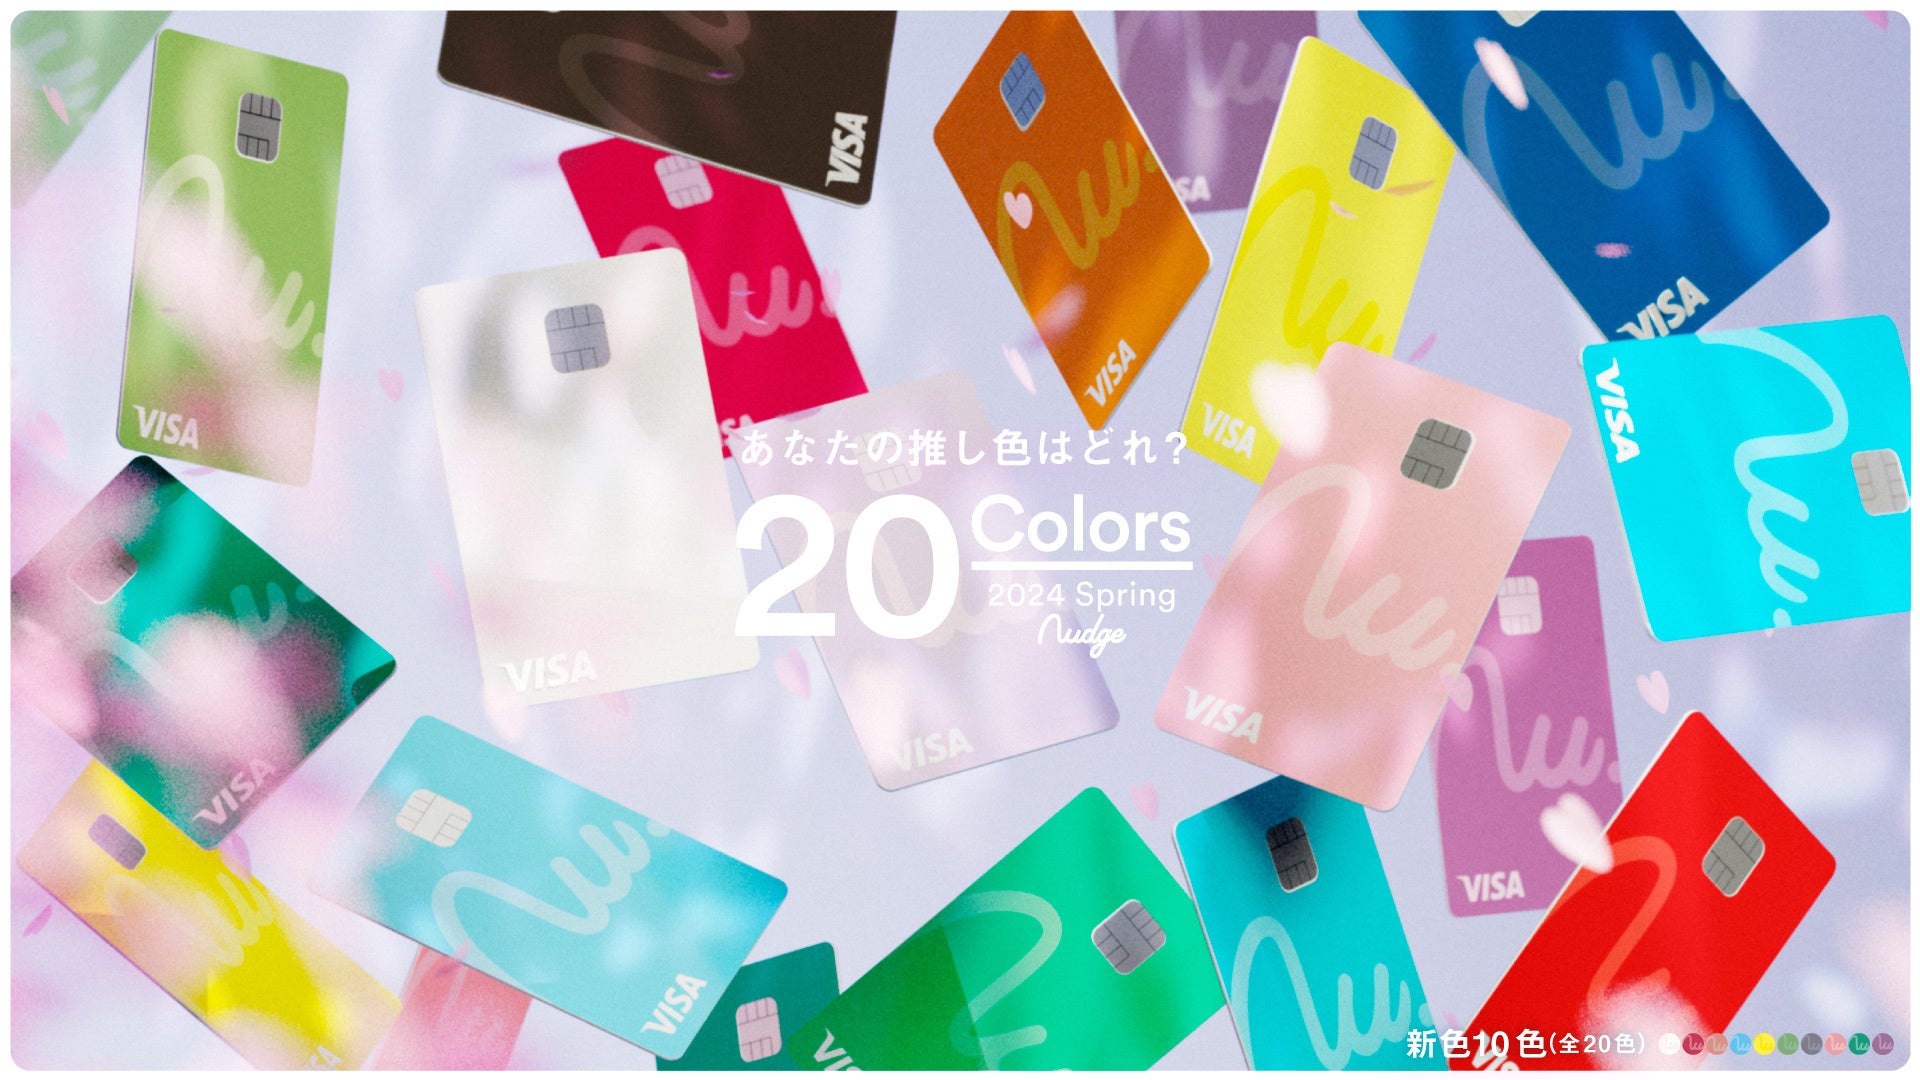 春らしいパステルカラーのクレジットカード「Color Collection 24SS」が、18歳から申し込めるクレジットカード「Nudge(ナッジ)」に登場！